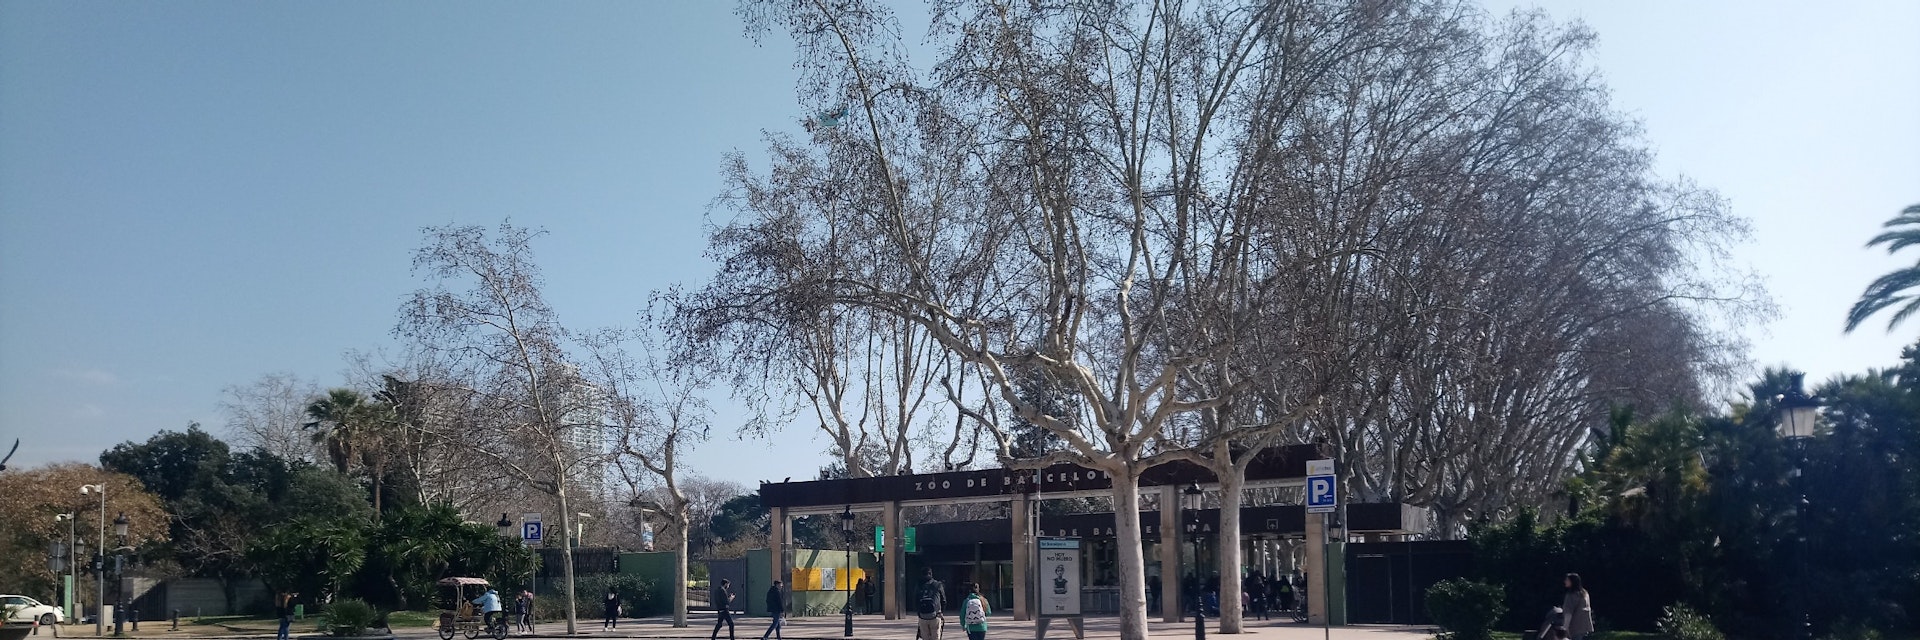 Outside of Barcelona Zoo